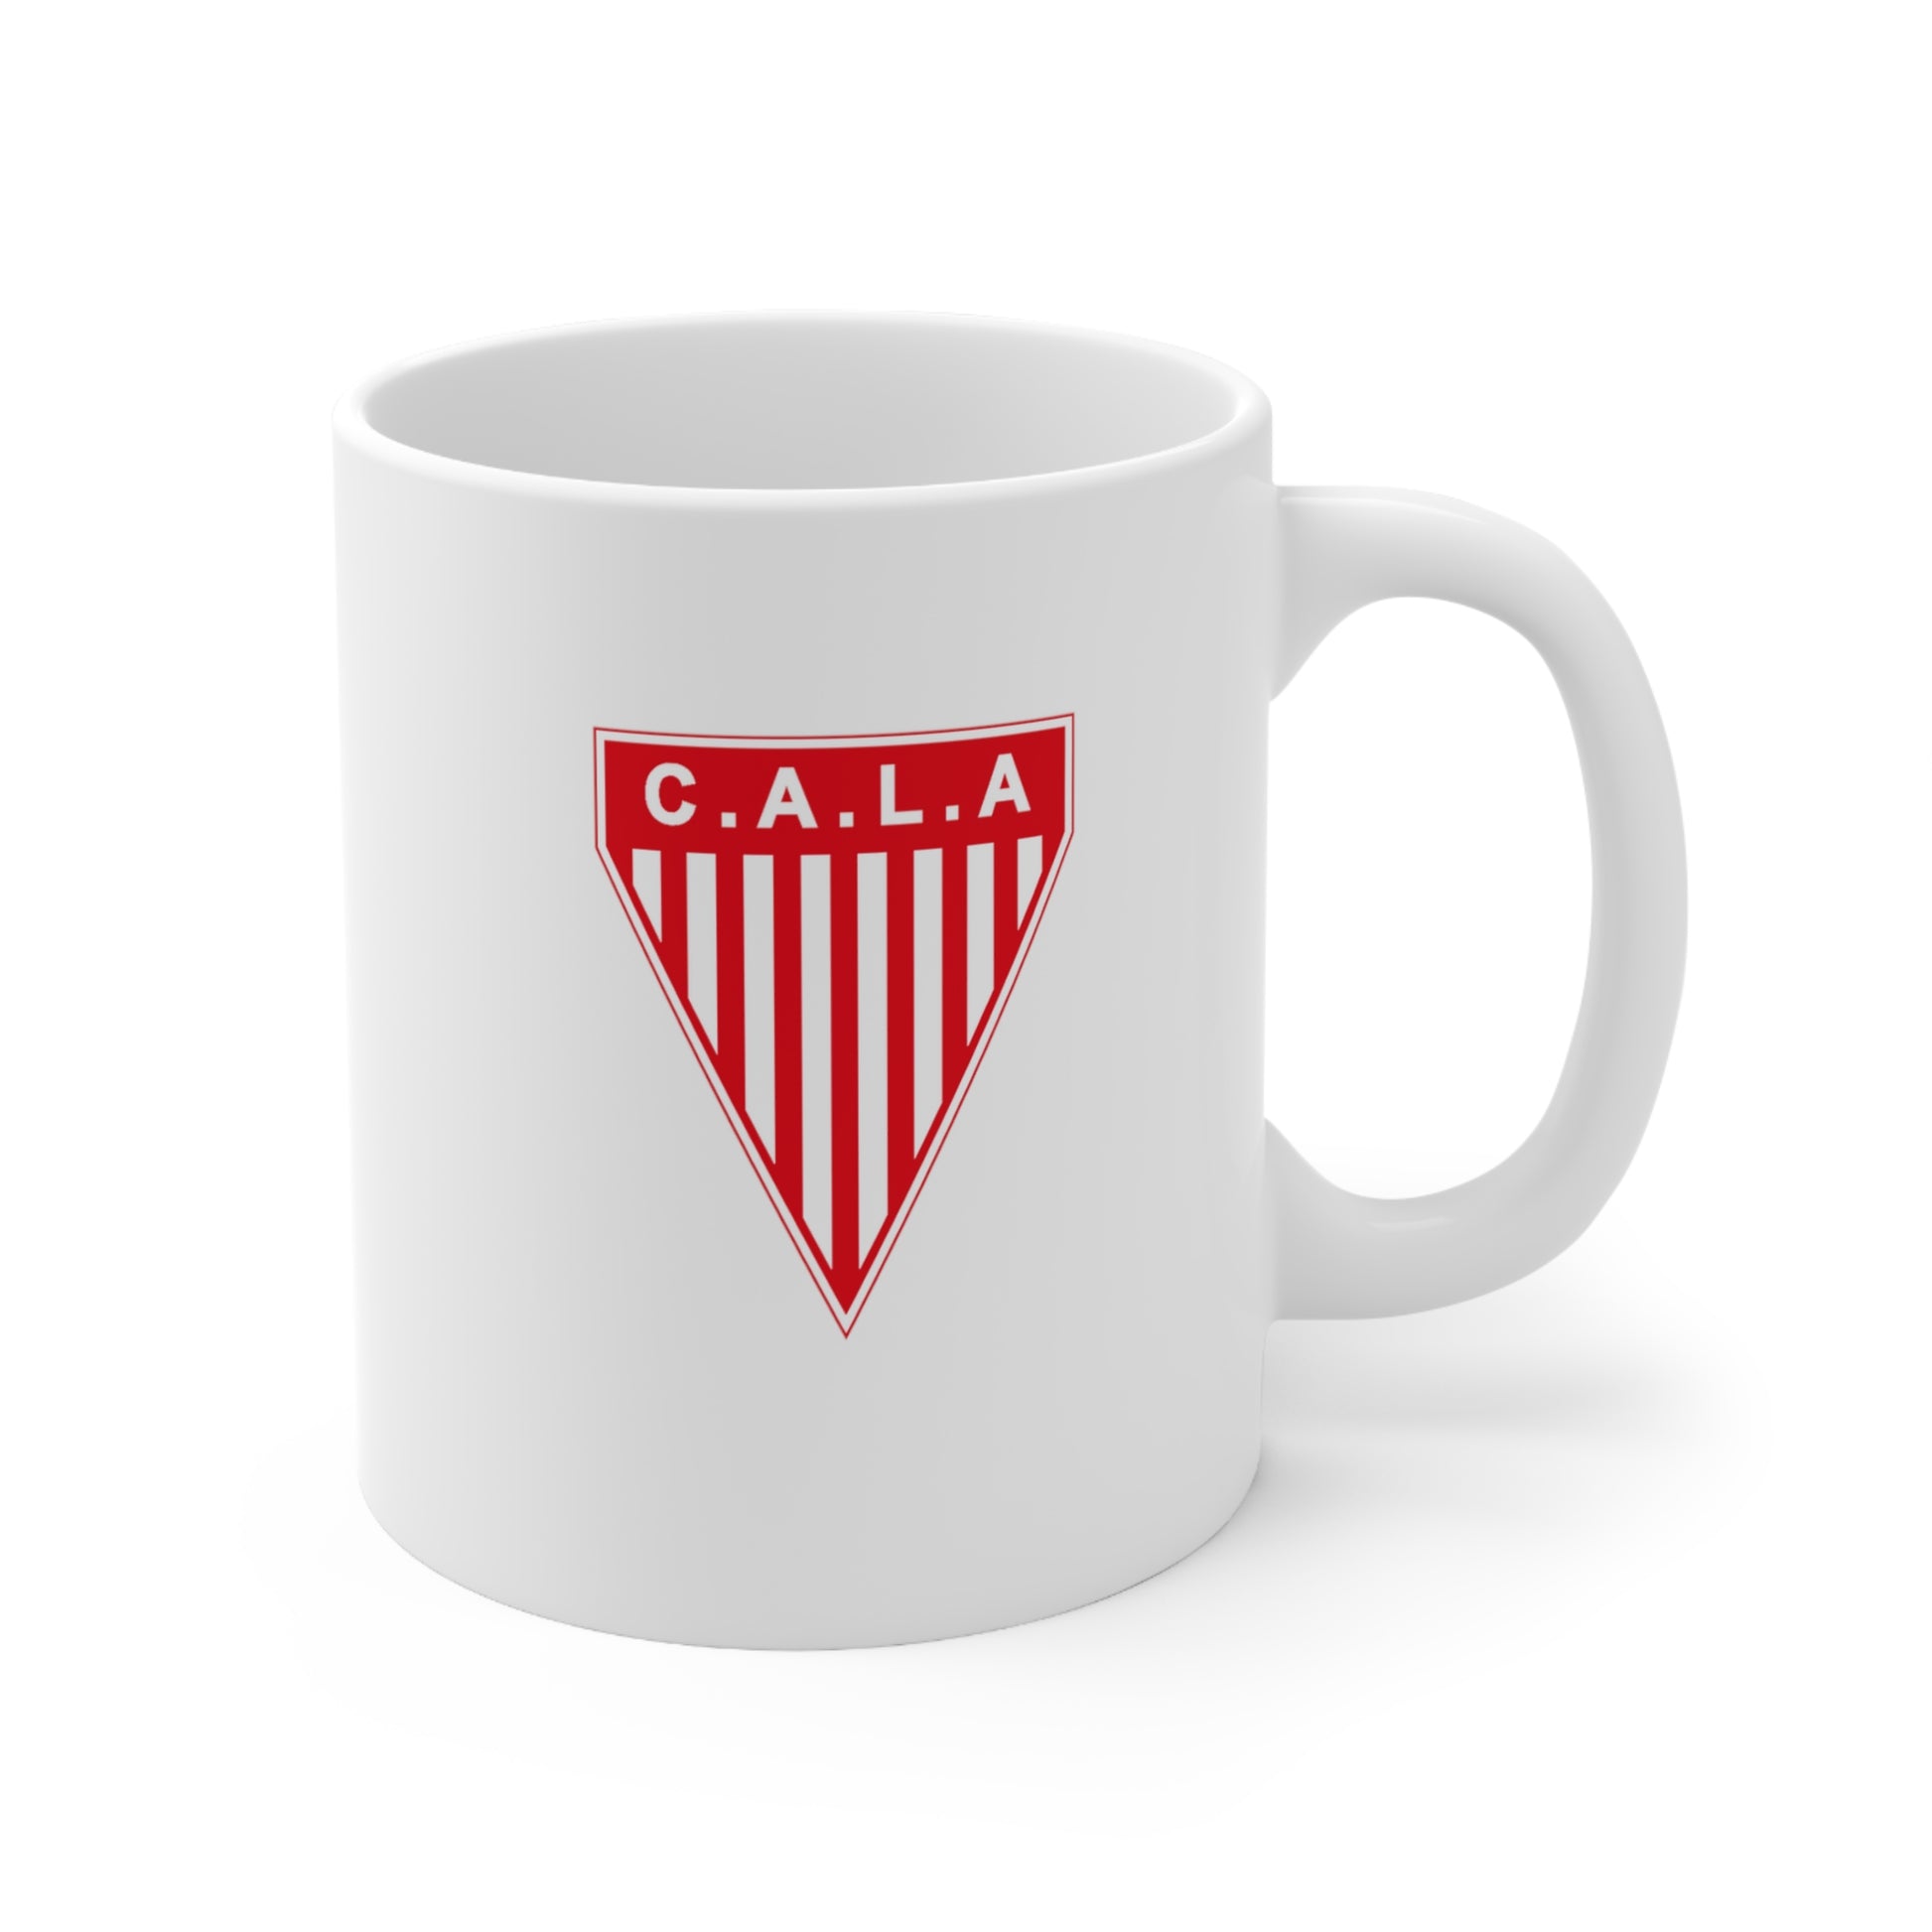 Club Atlético Los Andes de Lomas de Zamora Buenos Aires 2019 Ceramic Mug